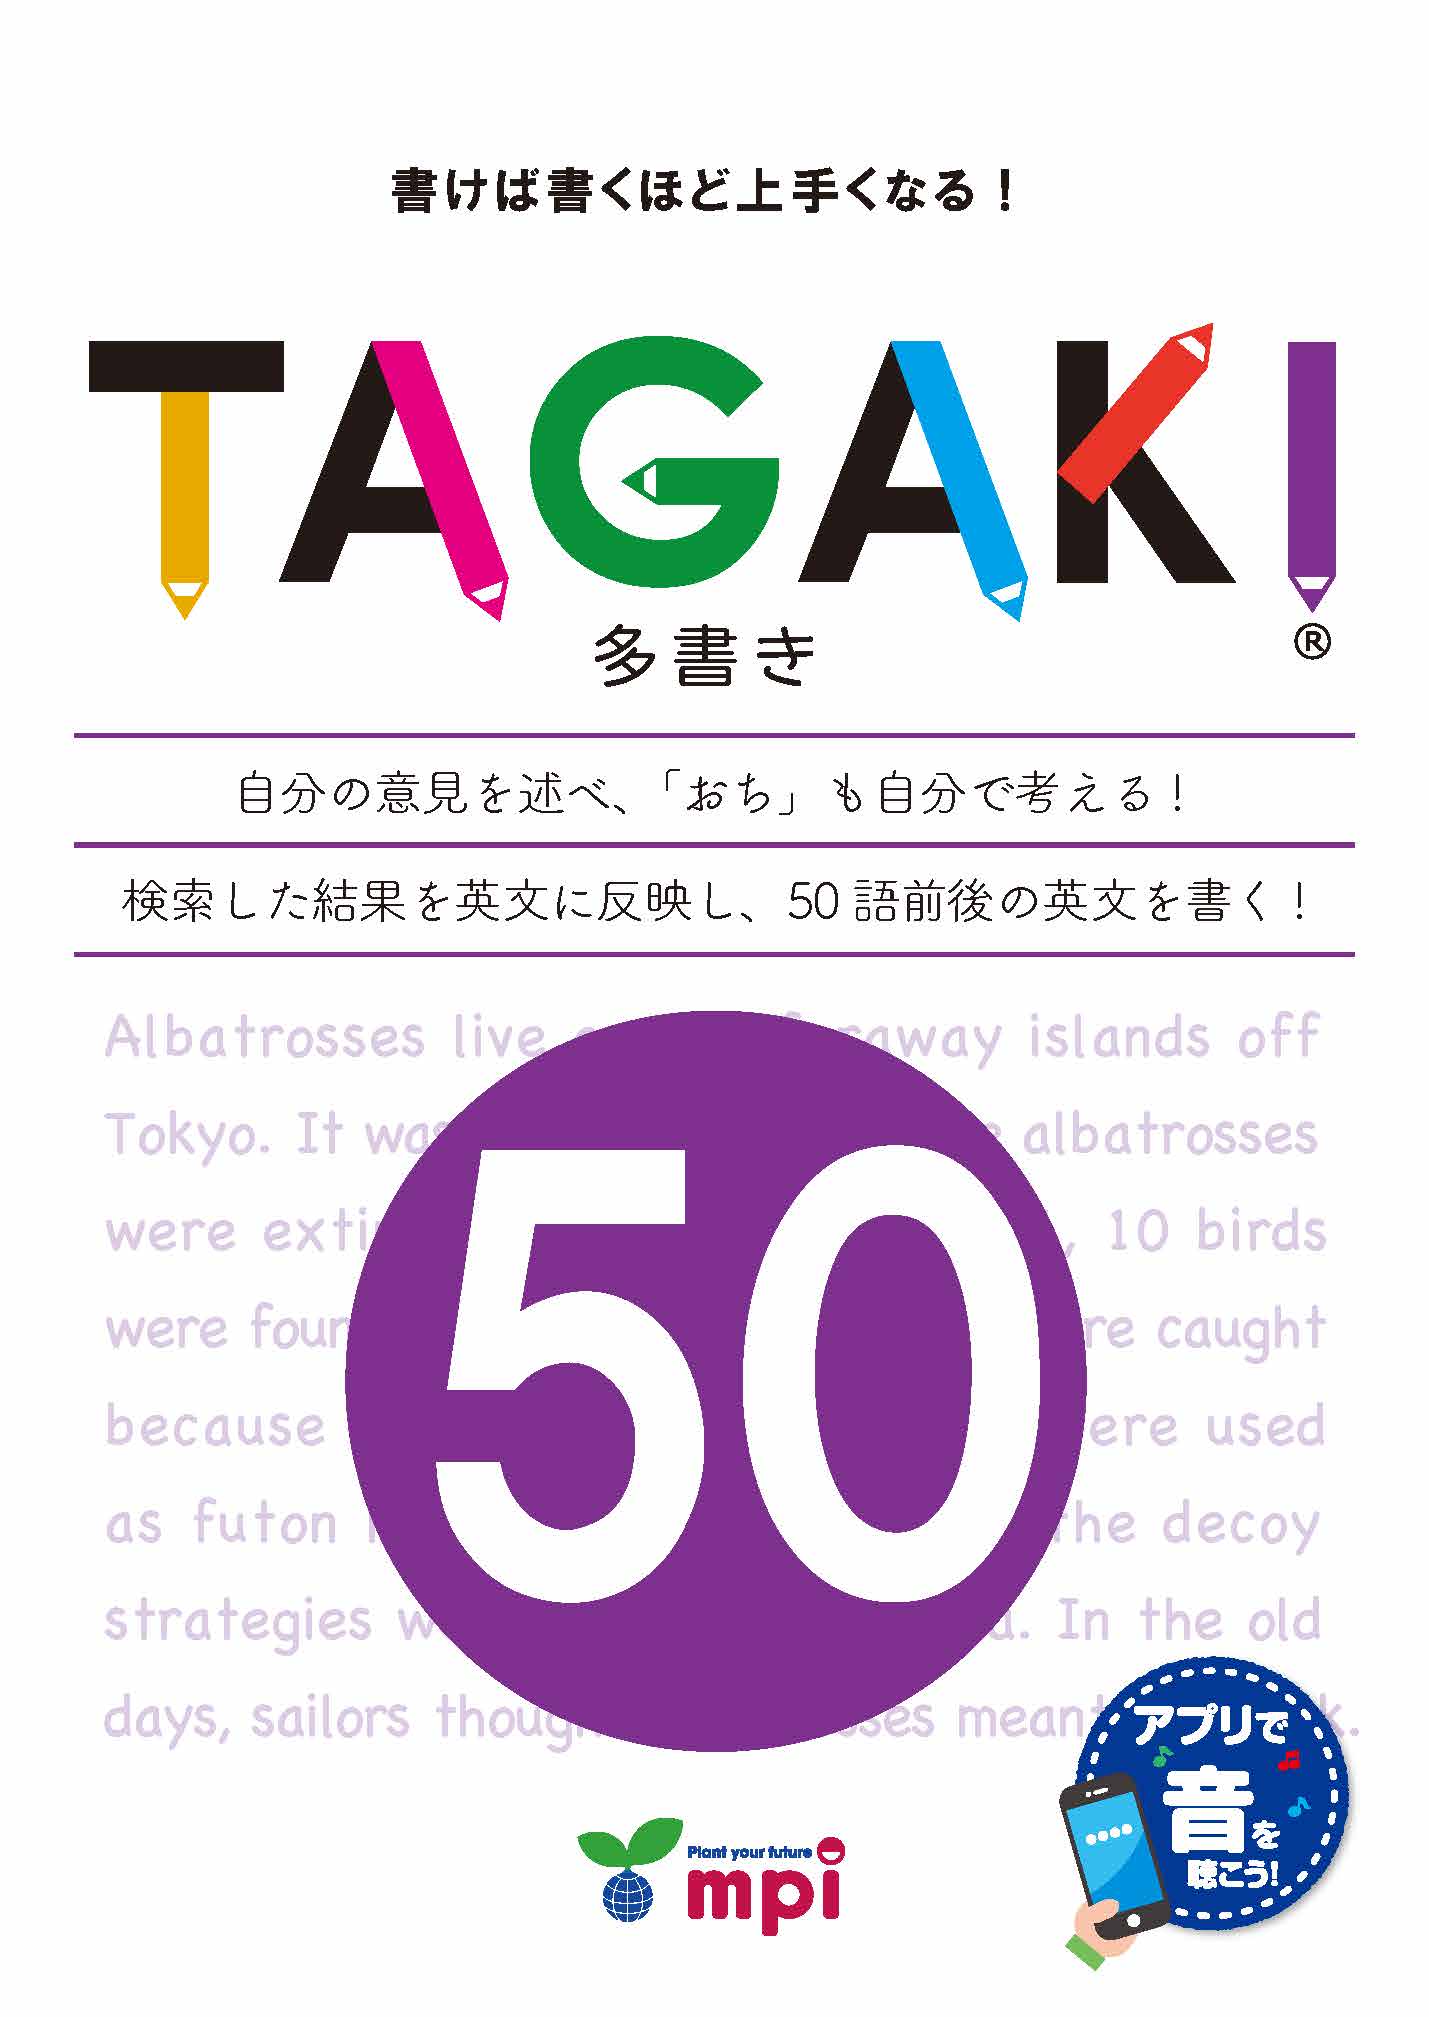 TAGAKI50